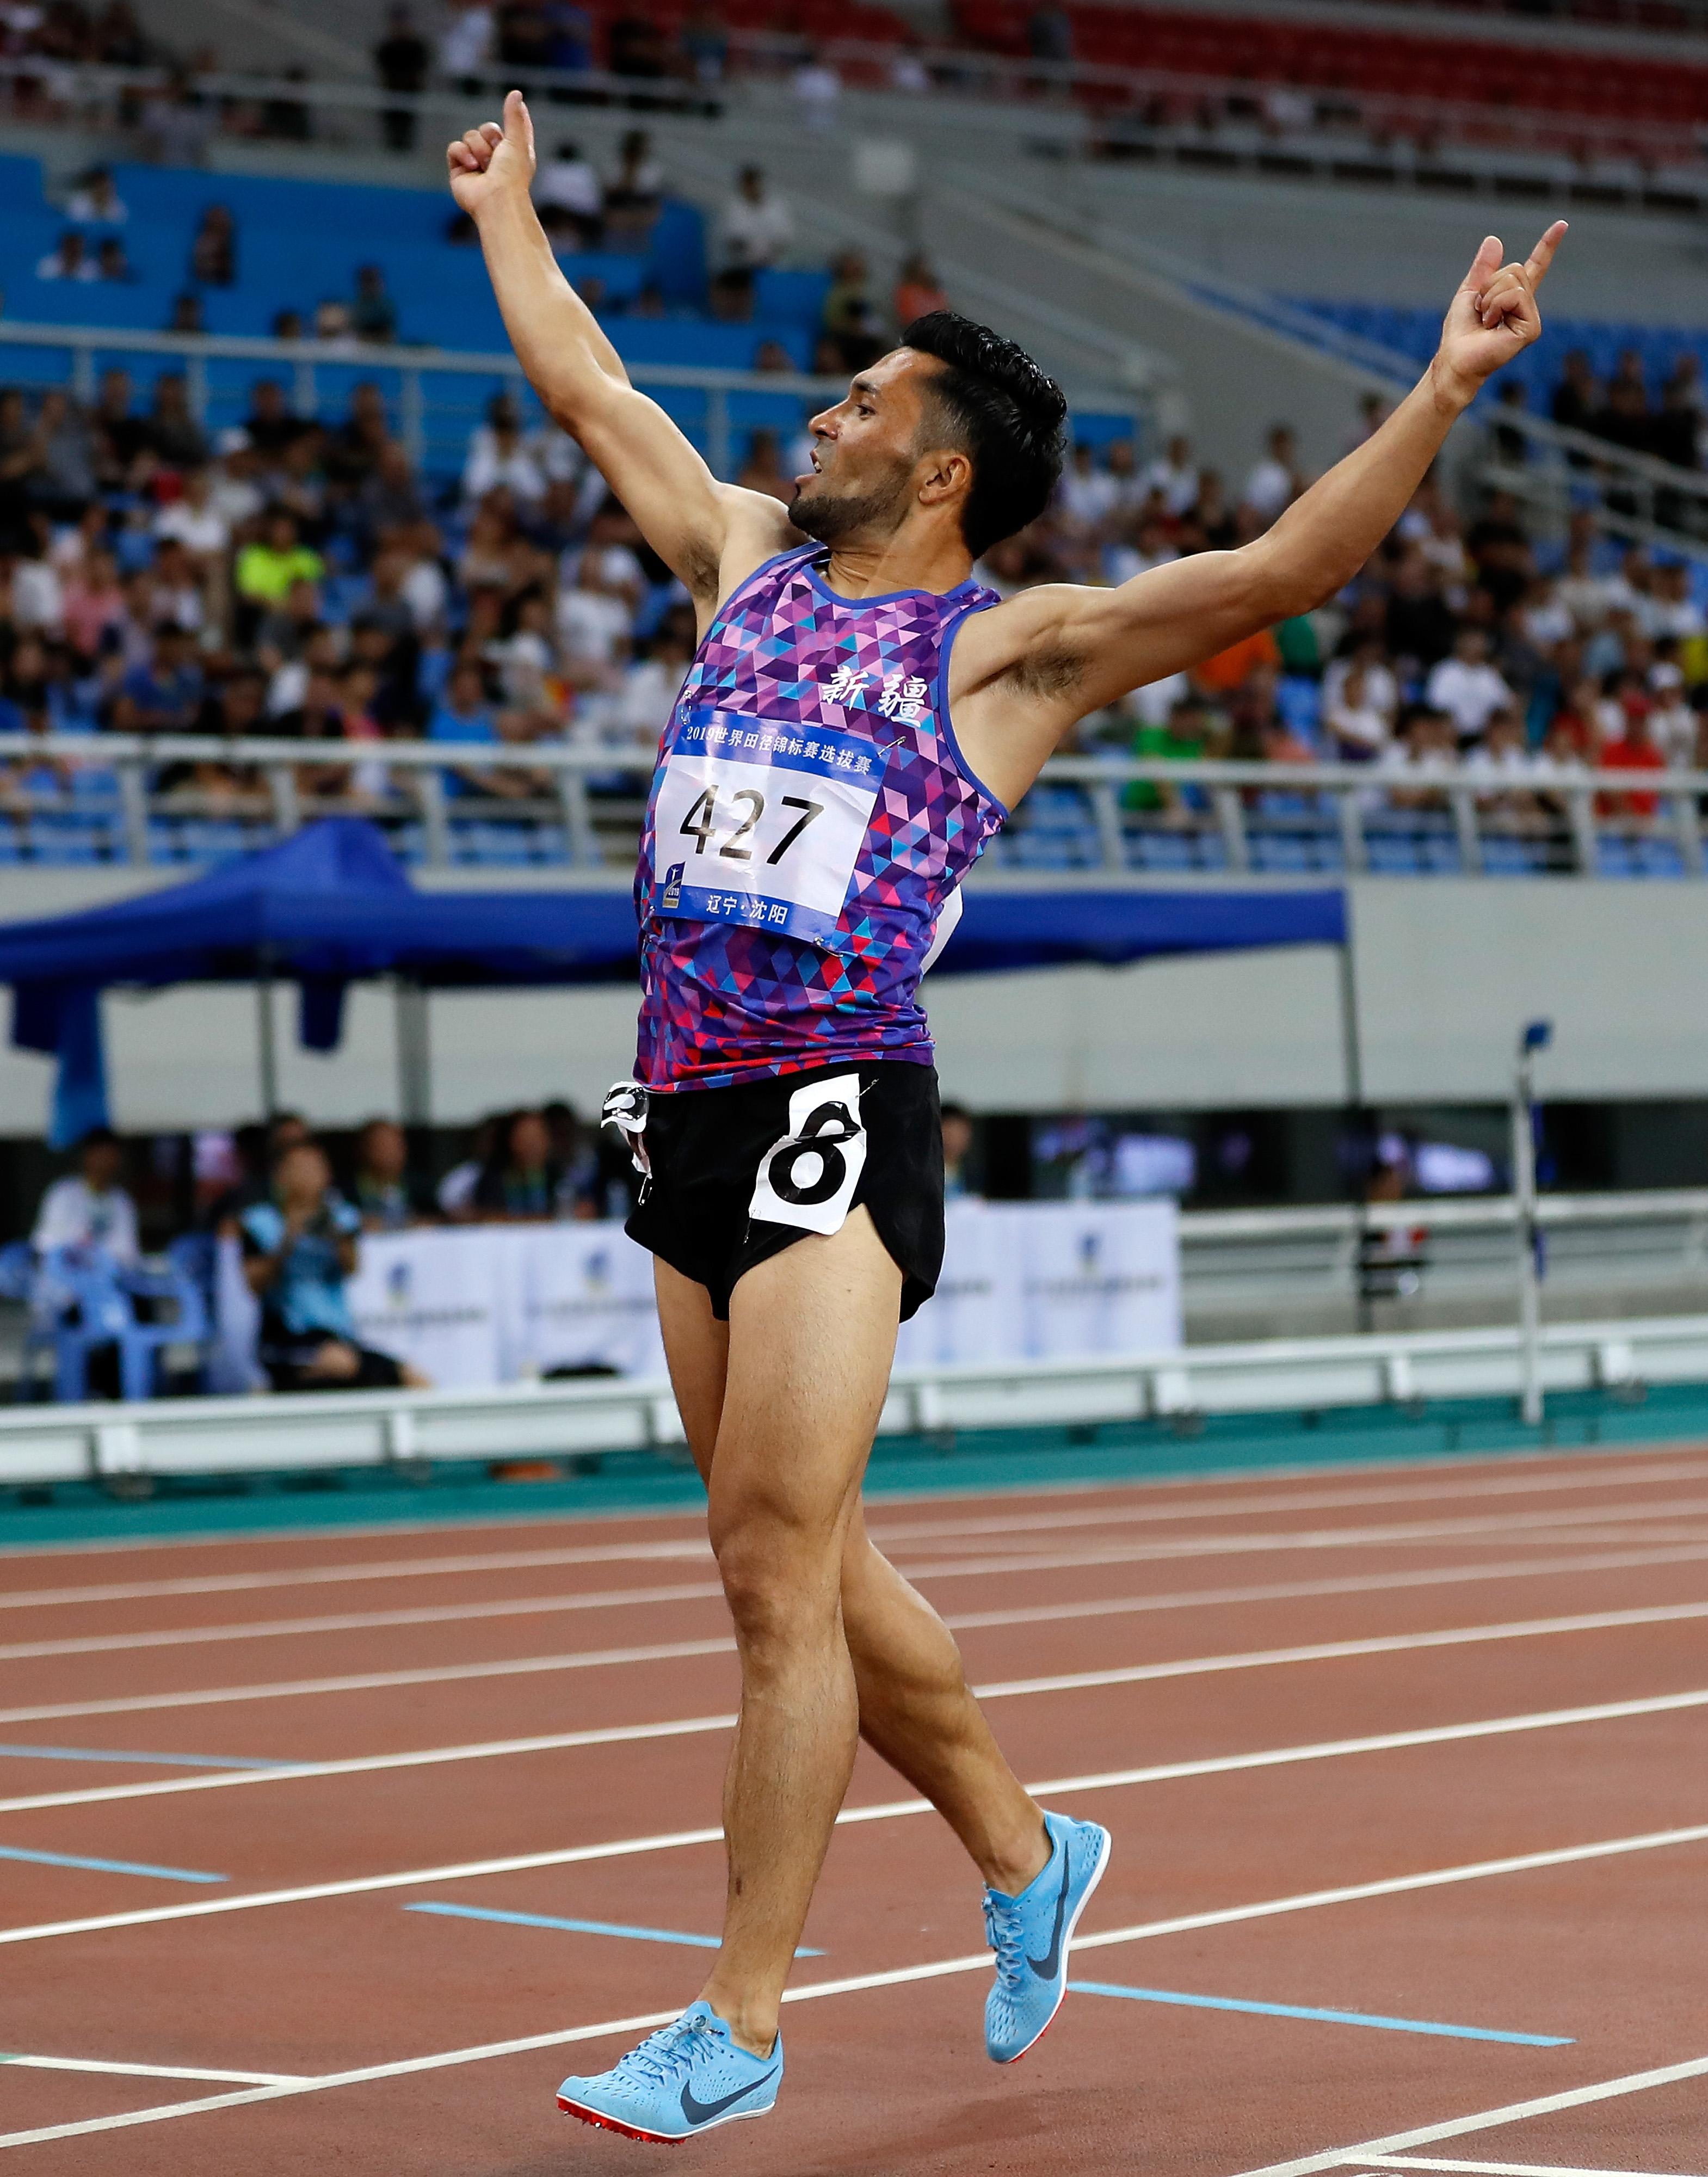 田径——世锦赛选拔赛:男子800米决赛赛况